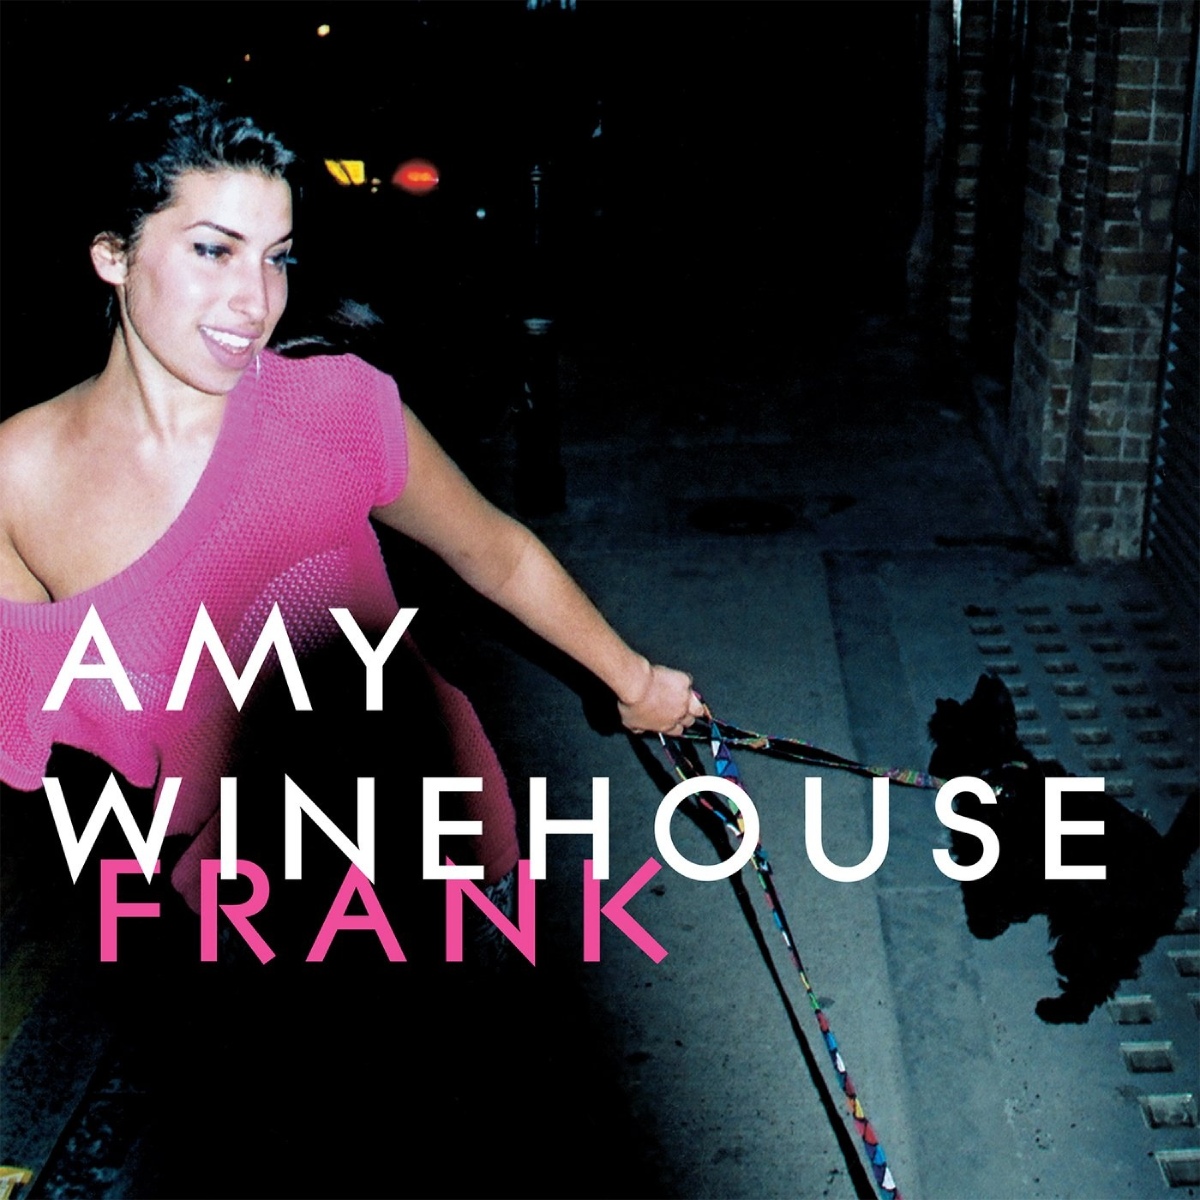 Couverture de l'album "Frank" d'Amy Winehouse